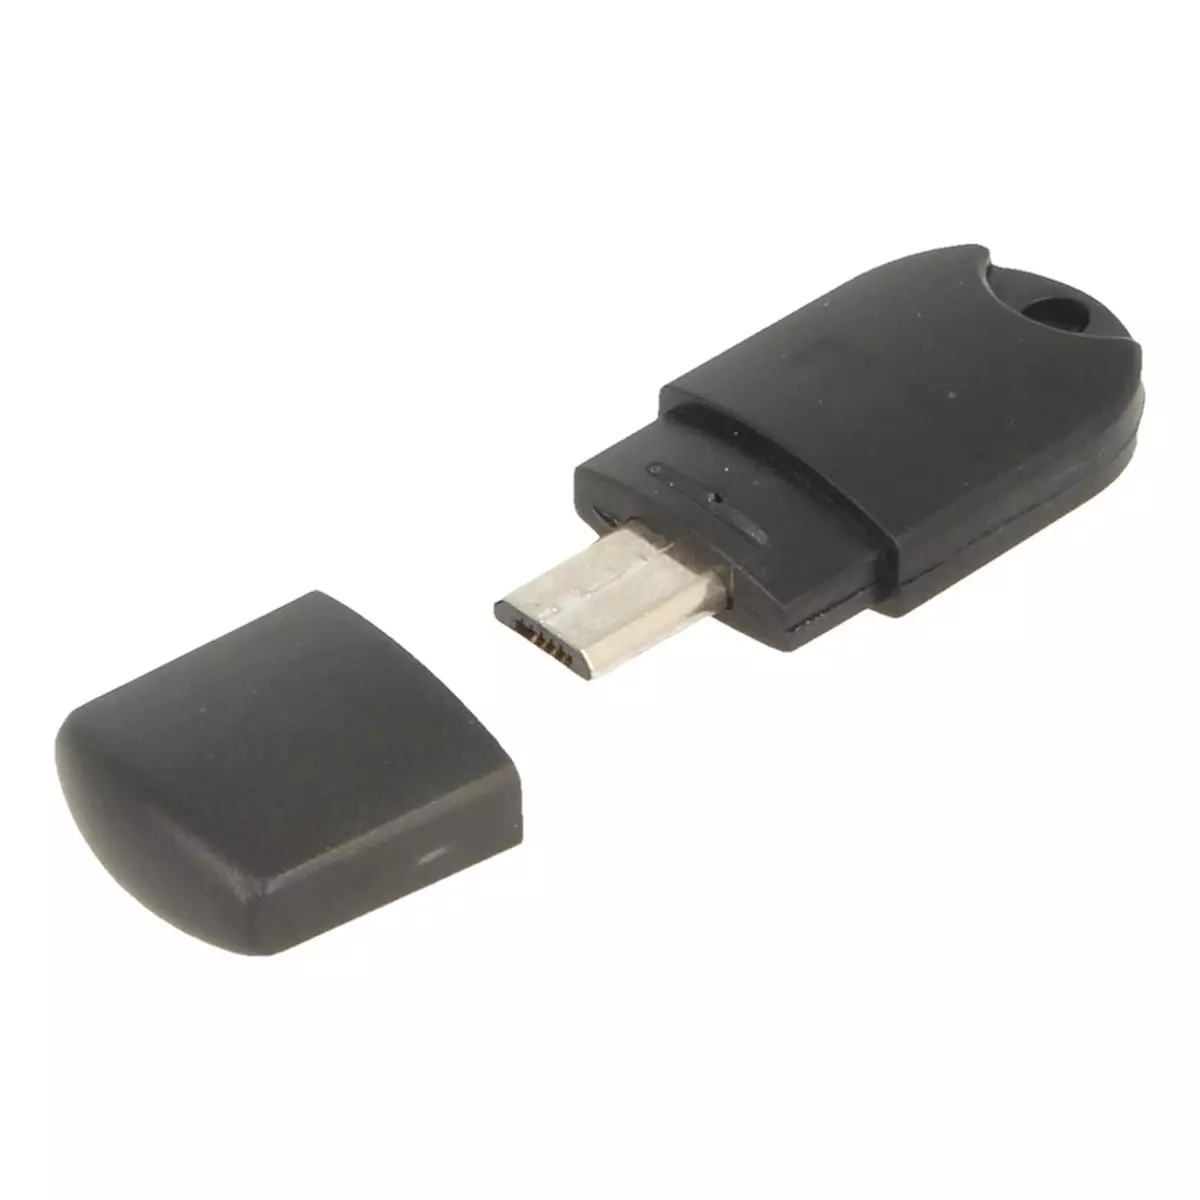 Klucz USB do zamków szyfrowych RO, SQ